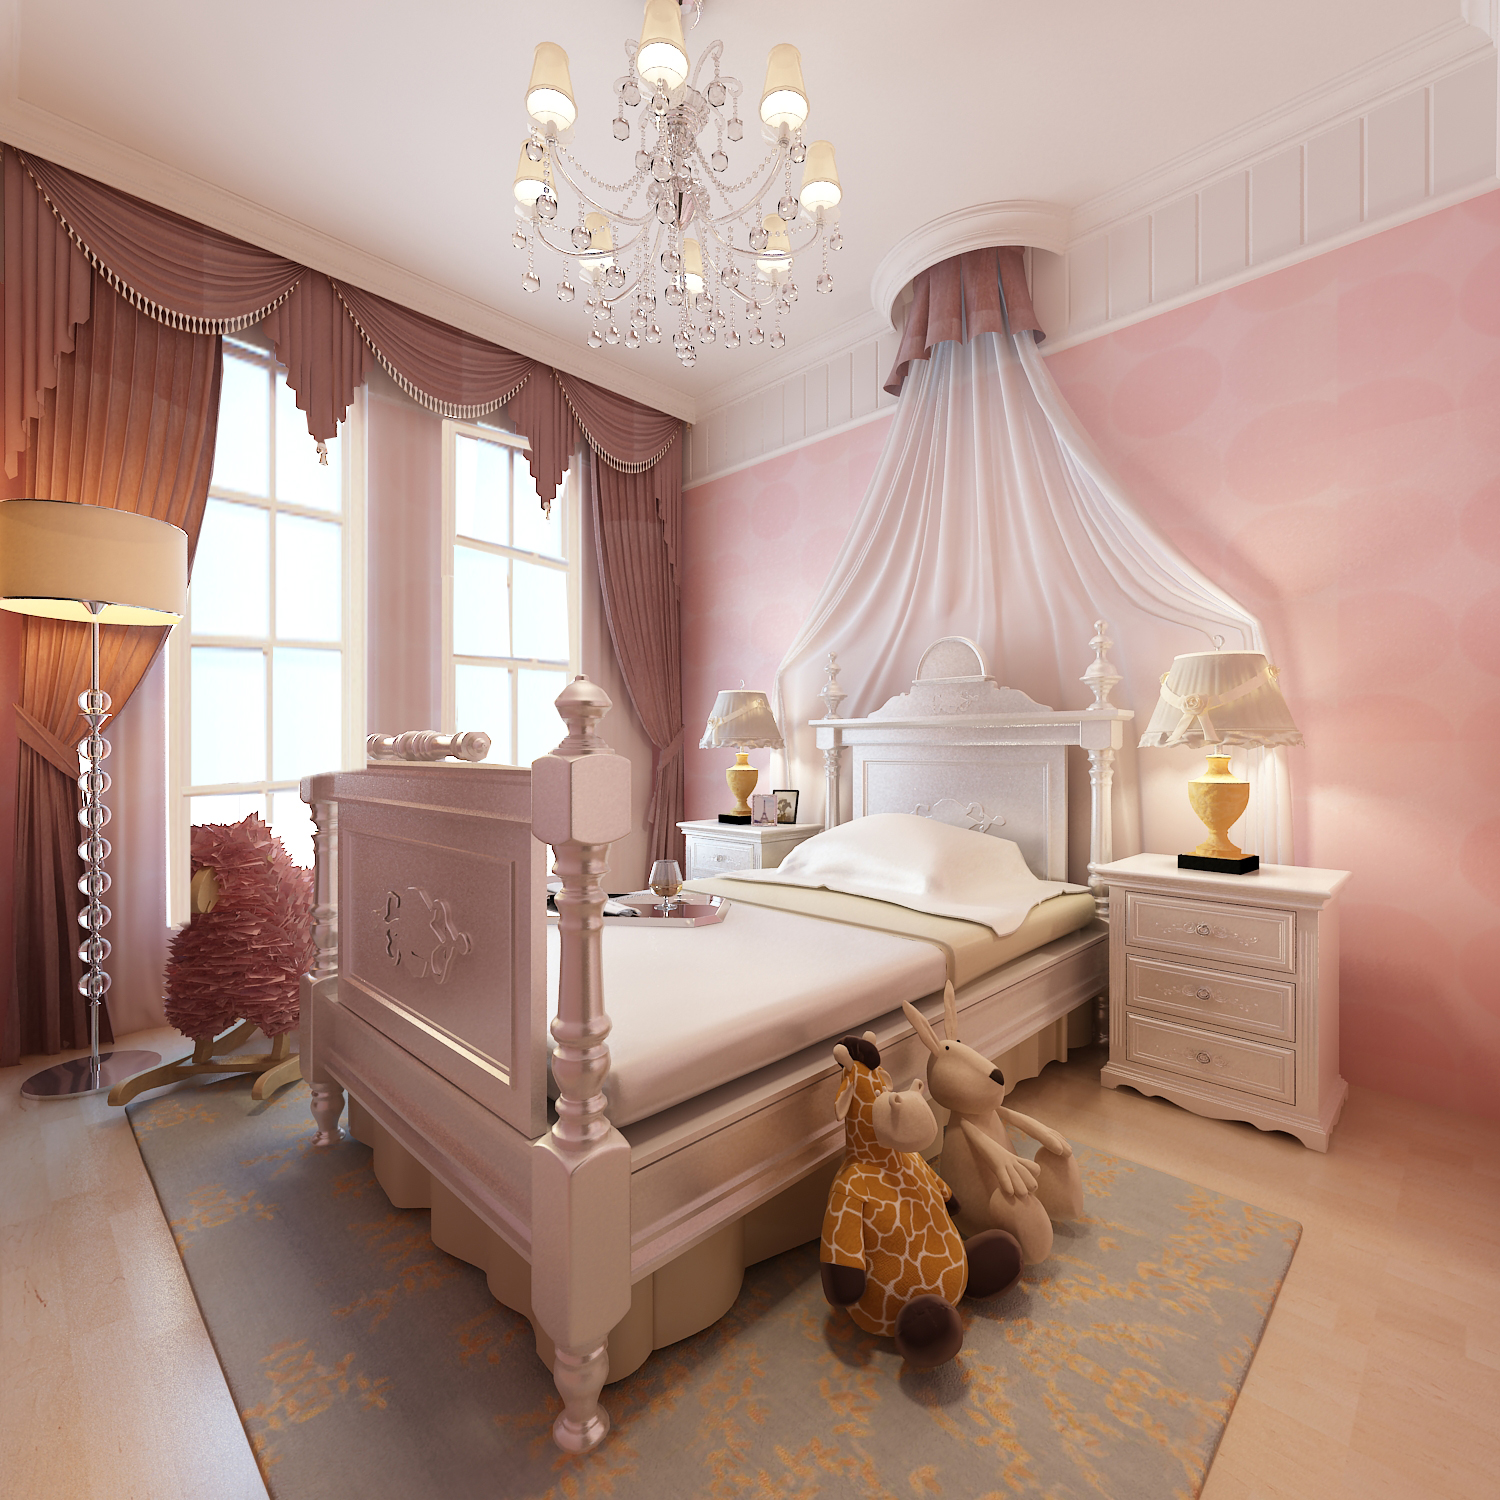 儿童房色彩上柔和唯美,依托家具体现欧式公主房间.